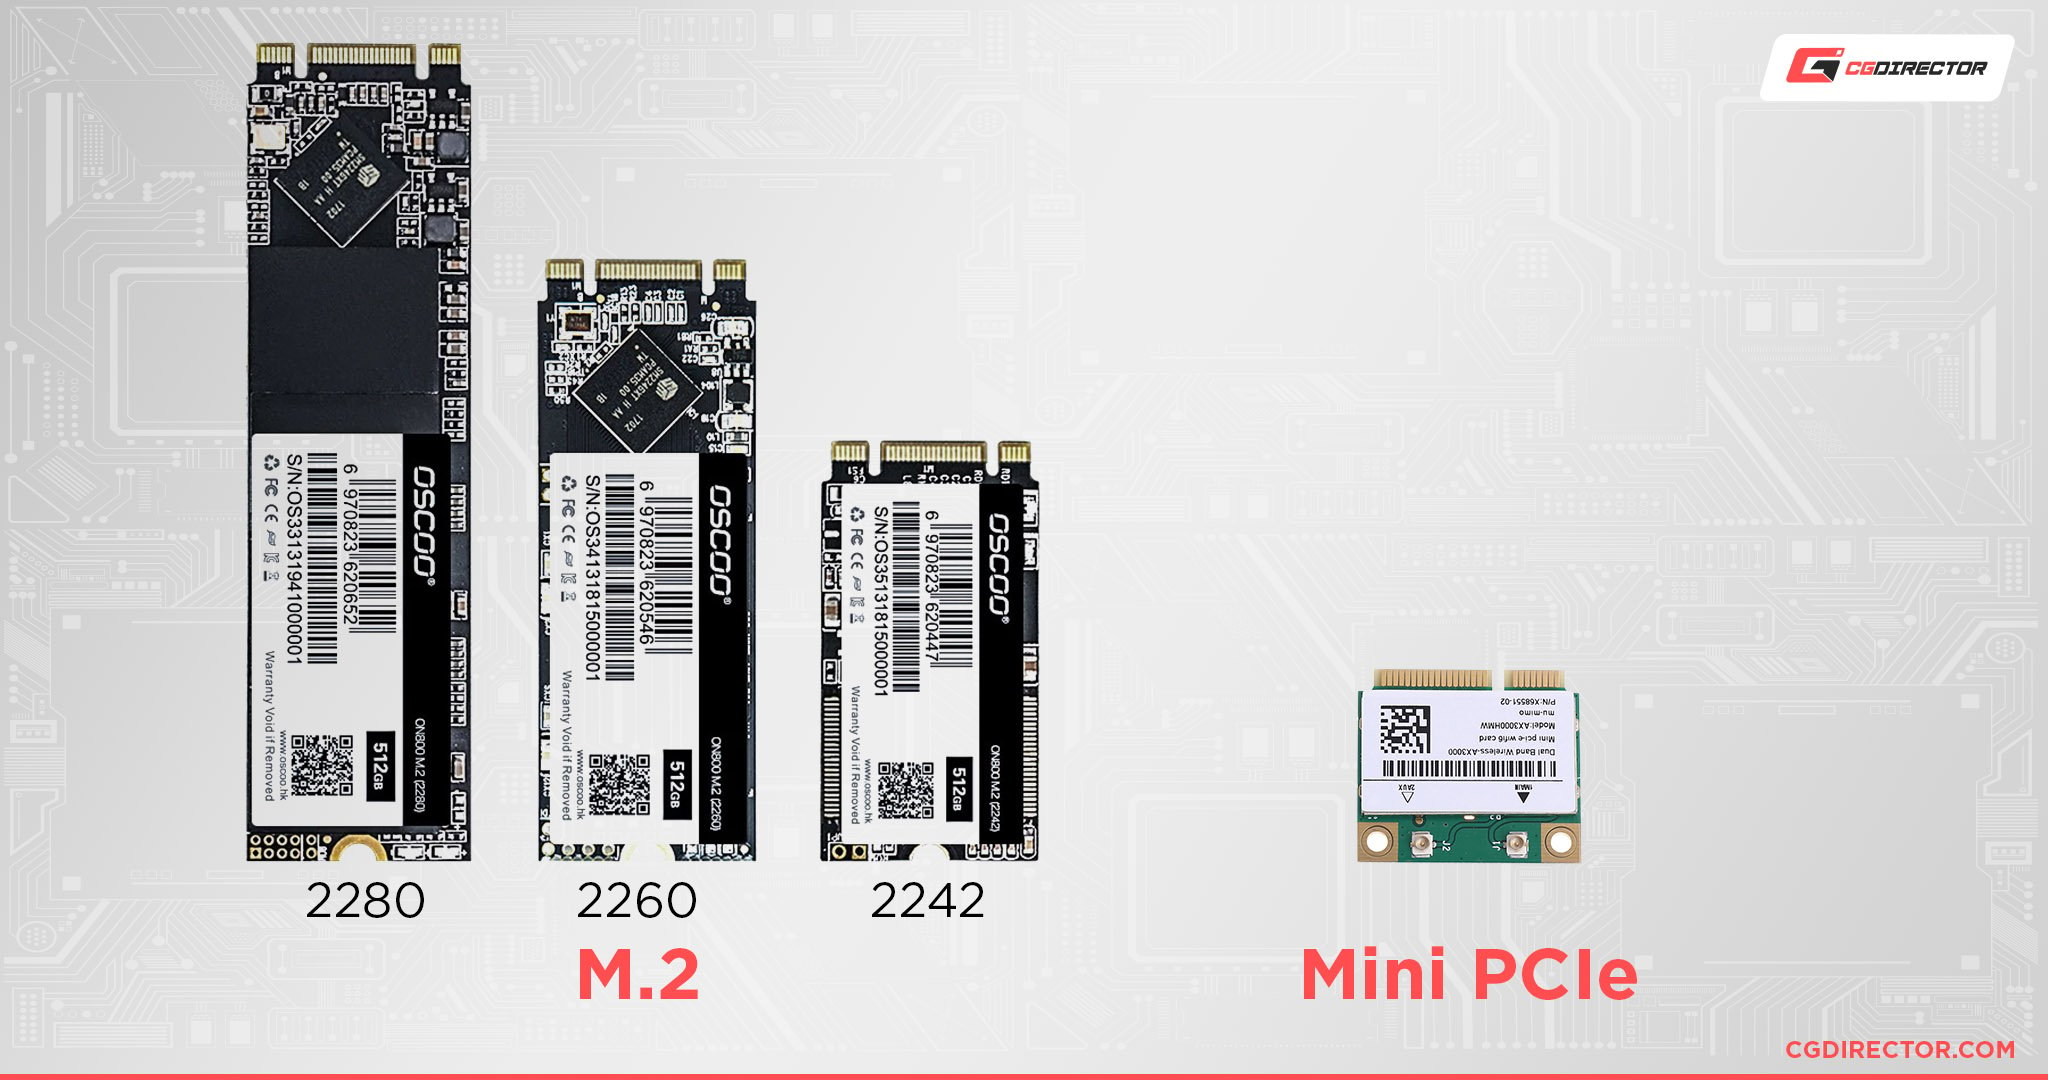 M.2 vs Mini PCIe Size Comparison